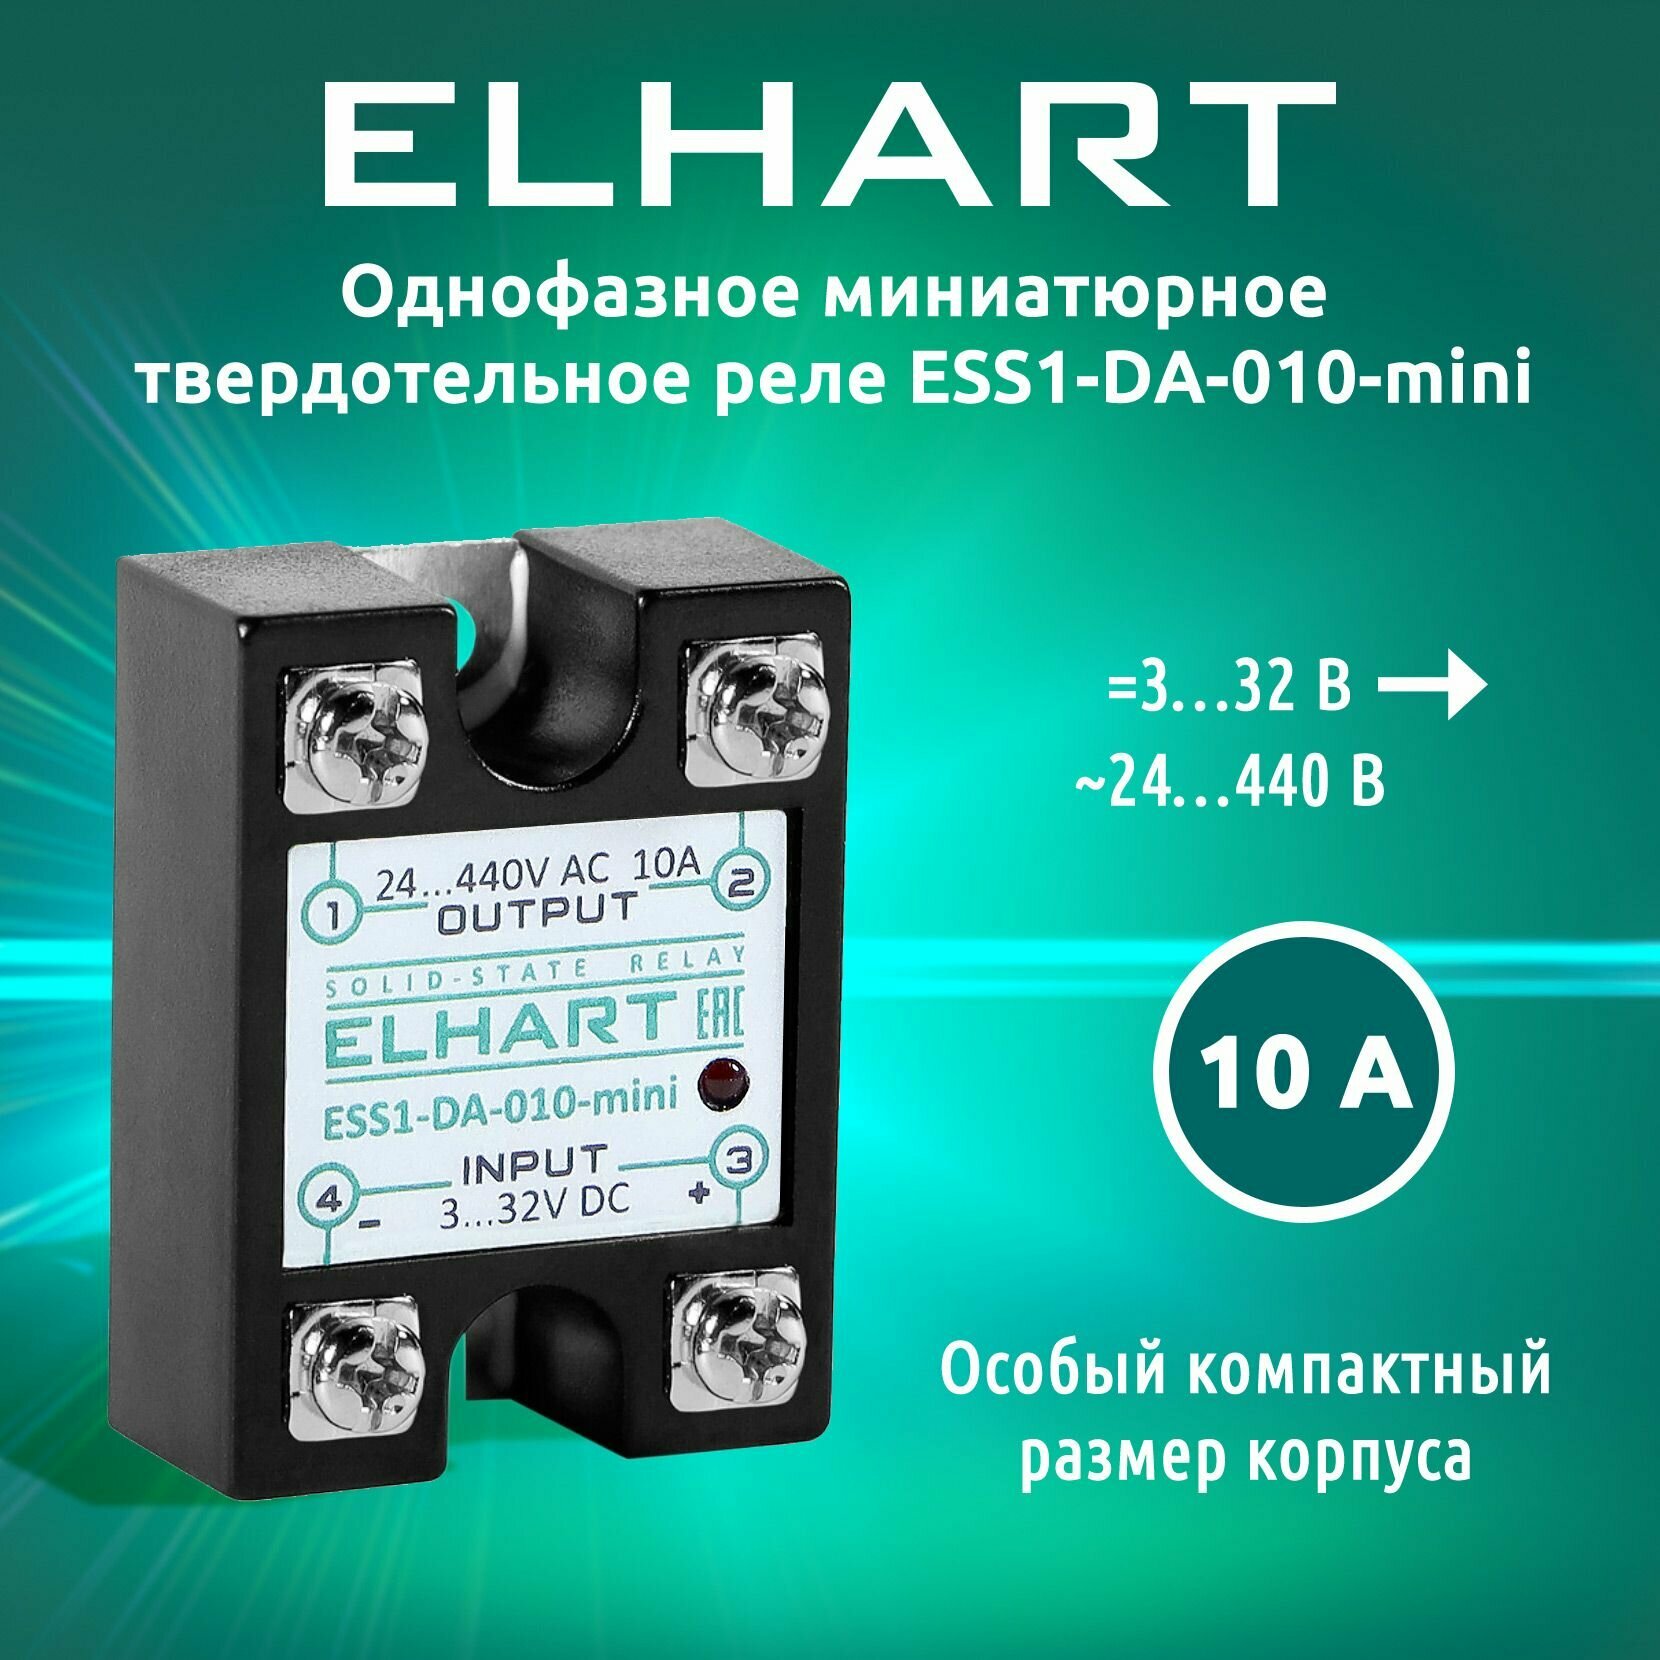 Однофазное твердотельное реле ELHART ESS1-DA-010-mini